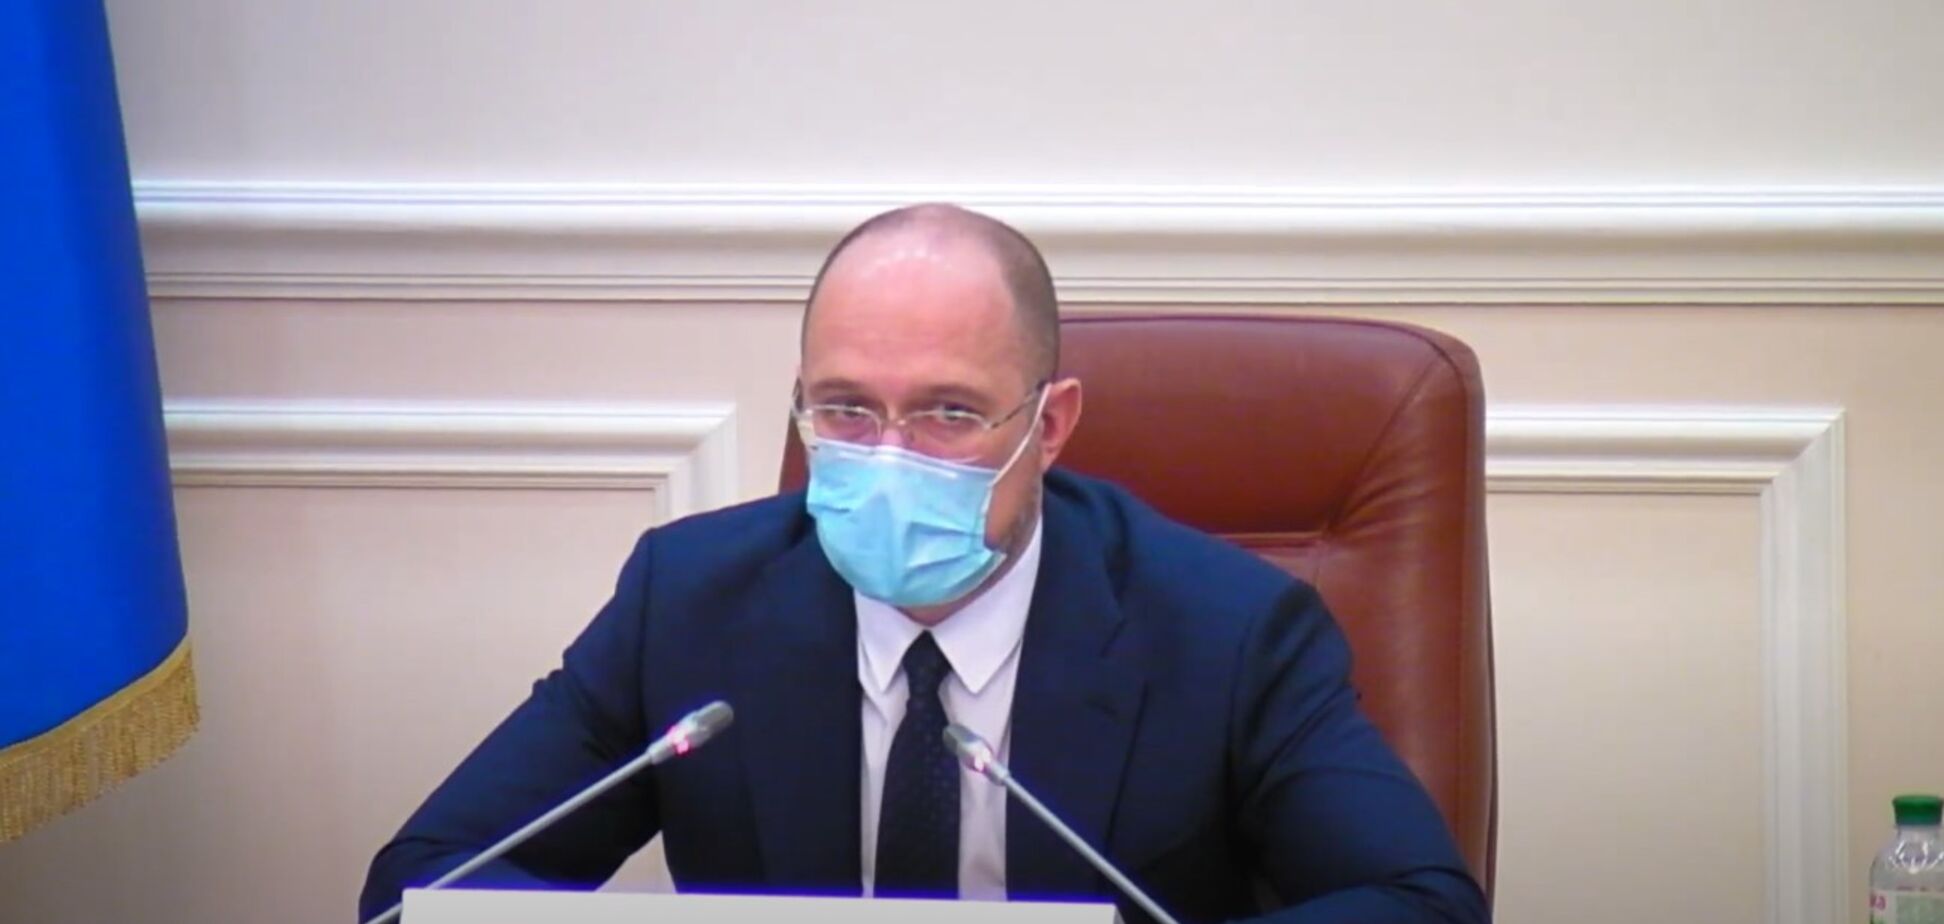 Прем'єрміністр Шмигаль оголосив про додаткову сесію ЗНО